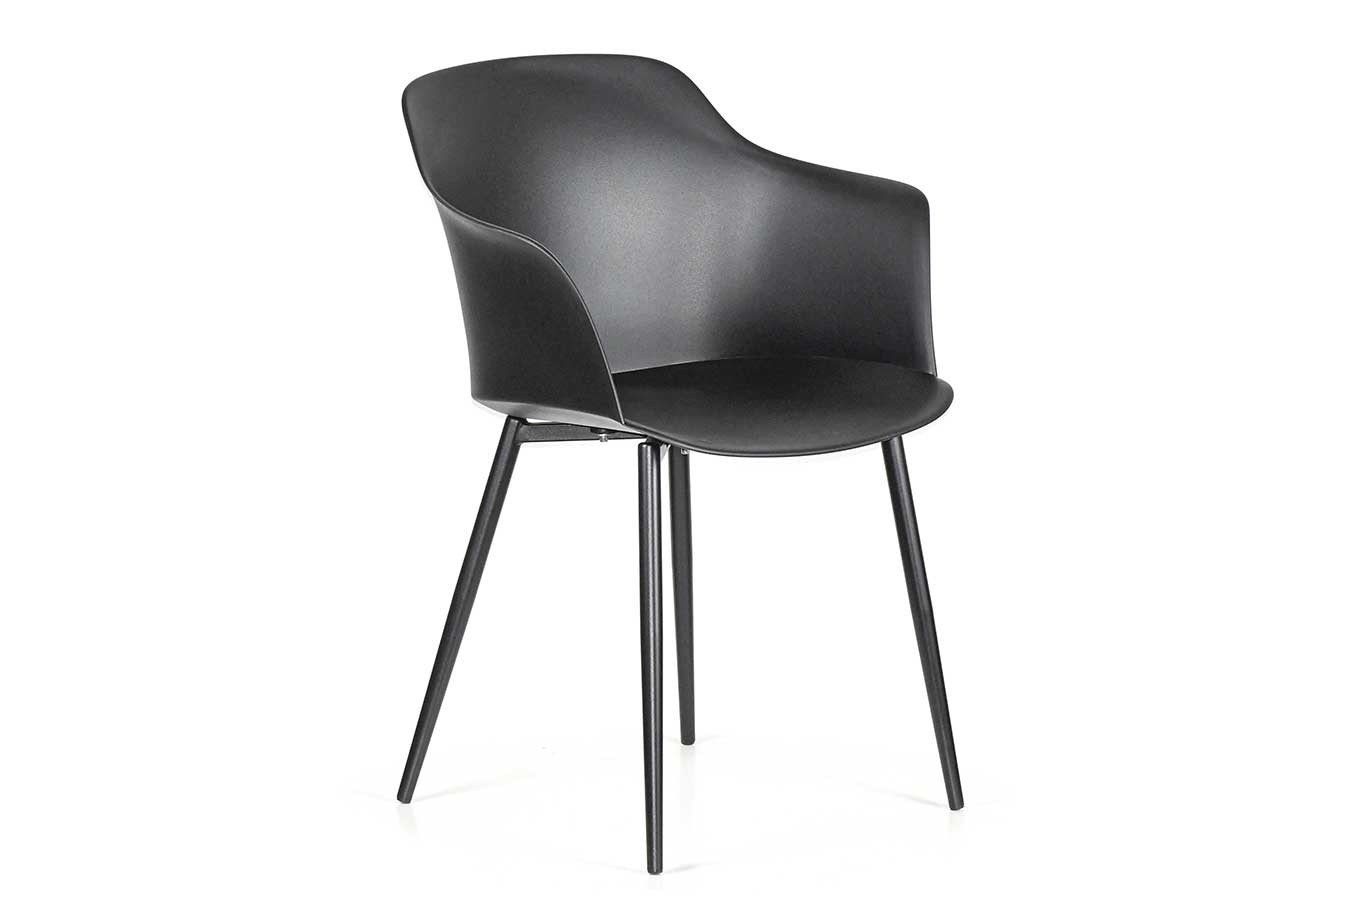 italienischer Designchair Blanchet schwarz living mit pulver daslagerhaus du Armlehne Stuhl